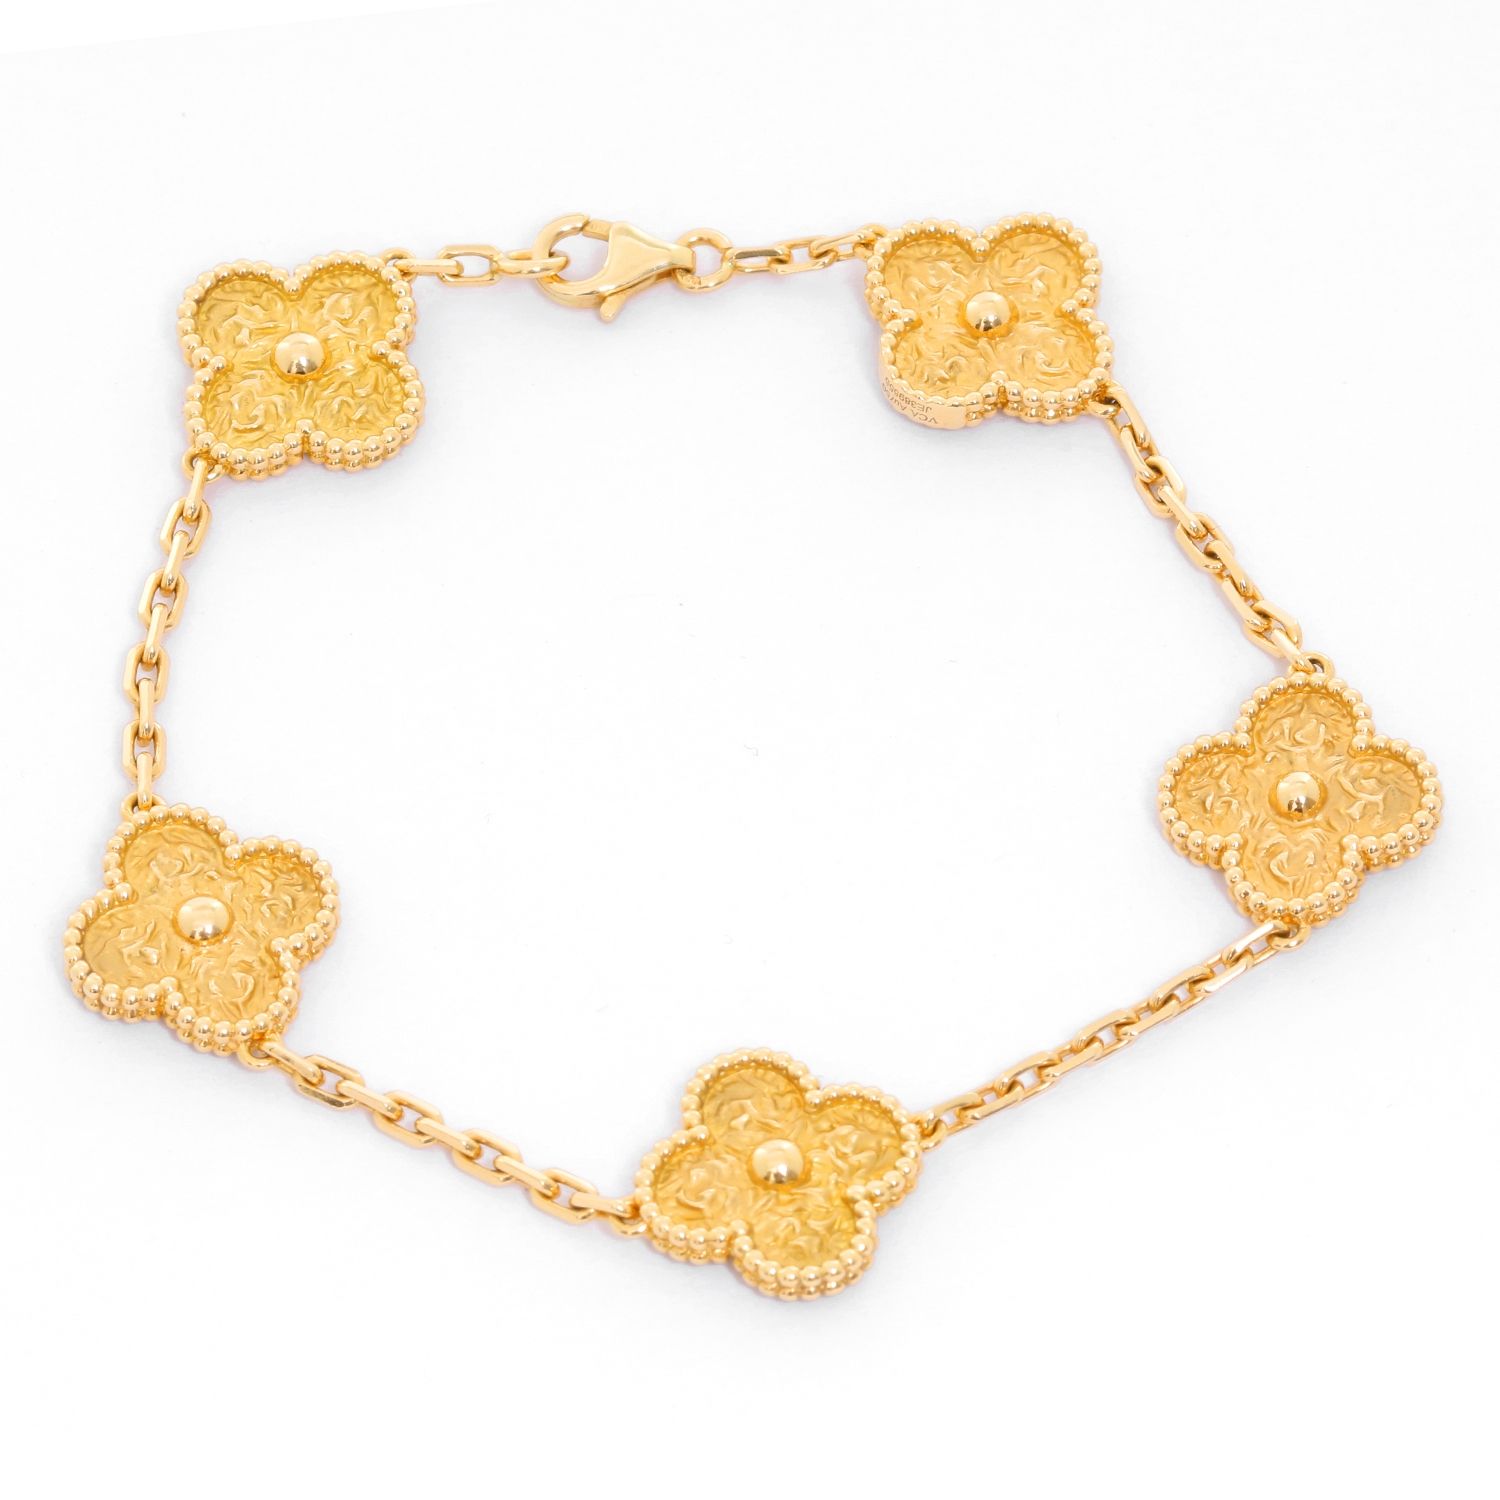 Buy Preowned  Brand new Luxury Van Cleef  Arpels Alhambra 18 K GoldWhite  color 05 Motiff Bracelet Online  LuxepolisCom